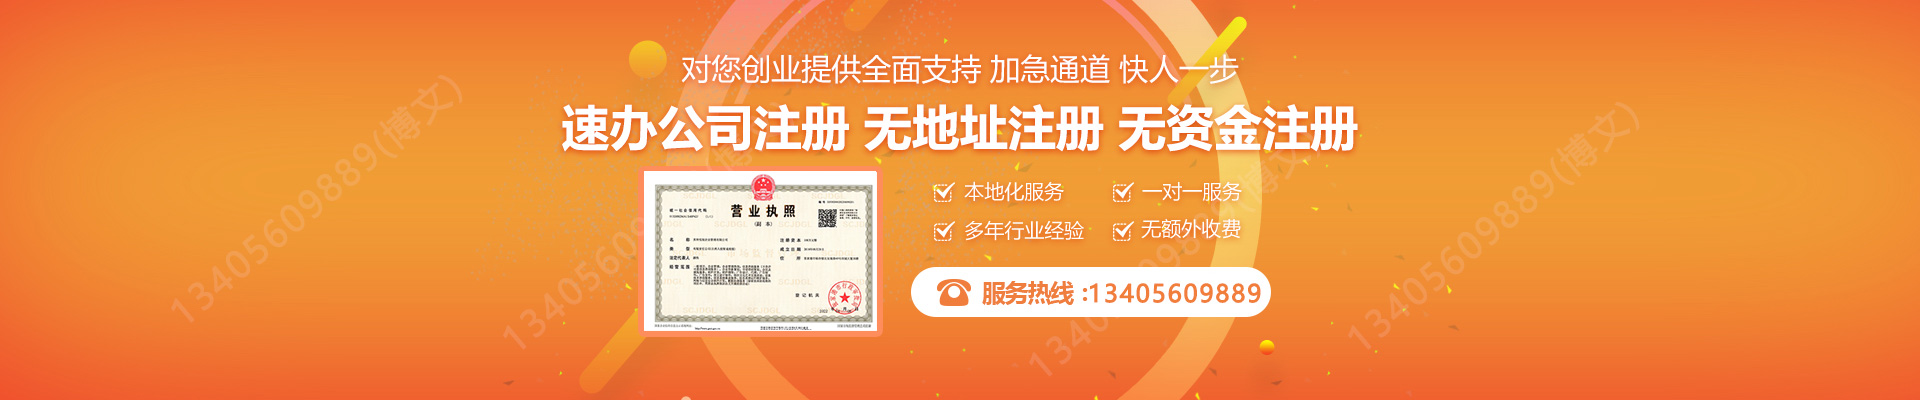 上海注册公司网